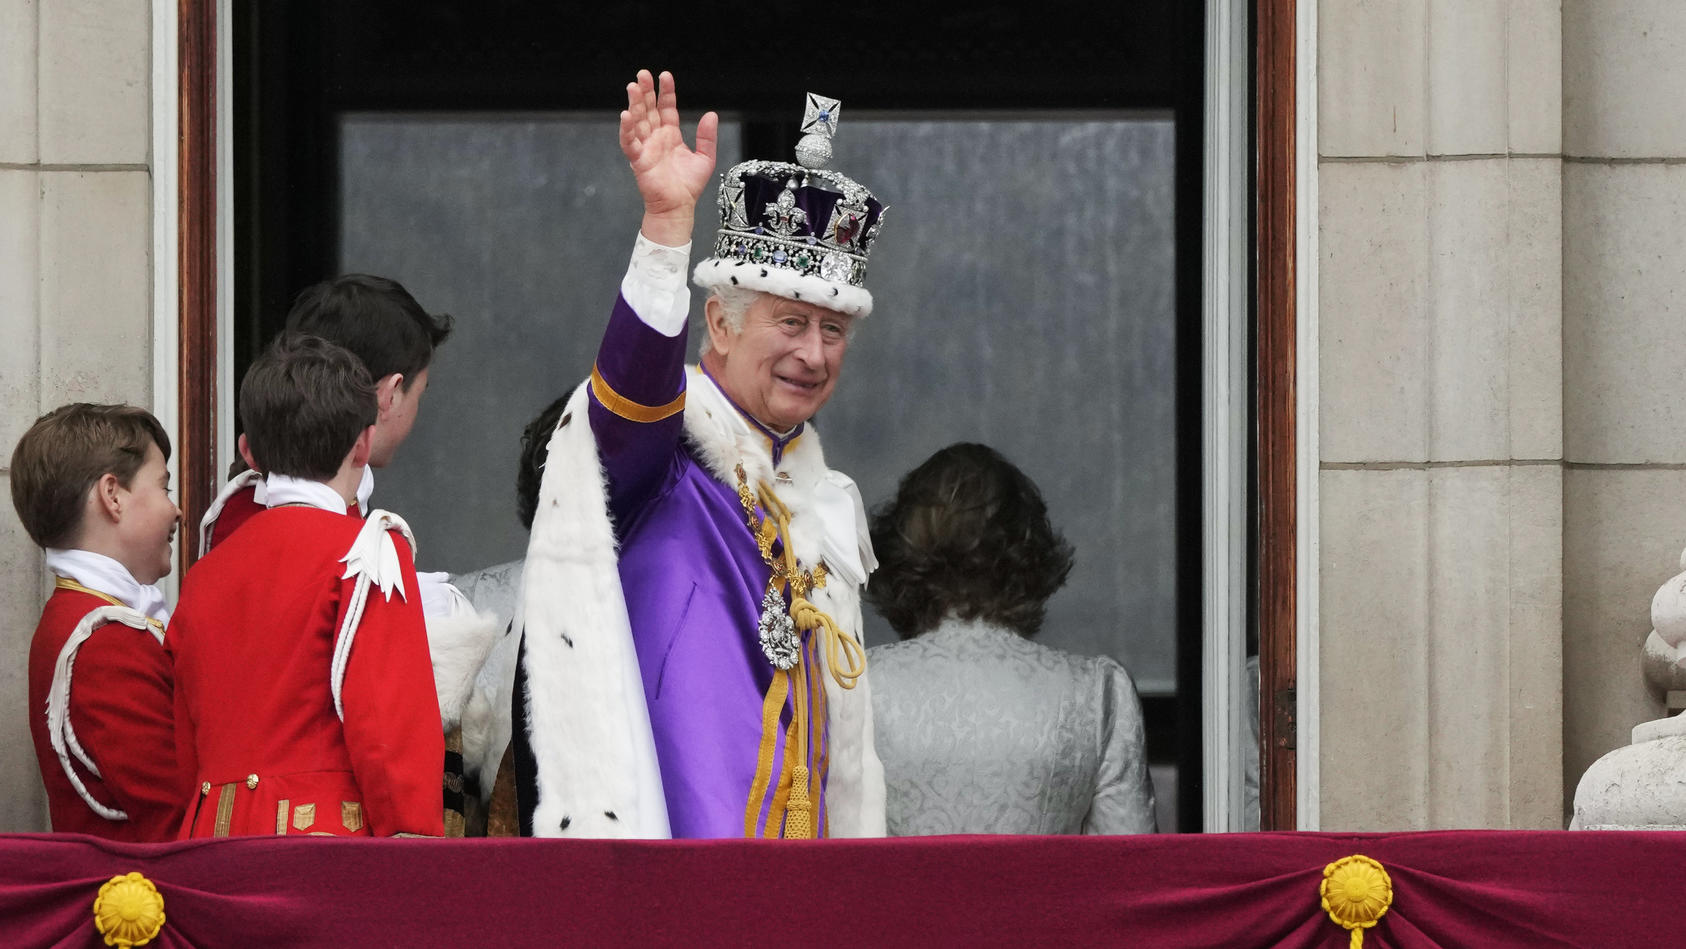 06.05.2023, Großbritannien, London: König Charles III. winkt nach der Krönungszeremonie vom Balkon des Buckingham Palastes aus der Menge zu. Charles und Camilla sind zu König und Königin gekrönt worden - vor den Augen zahlreicher prominenter Gäste au